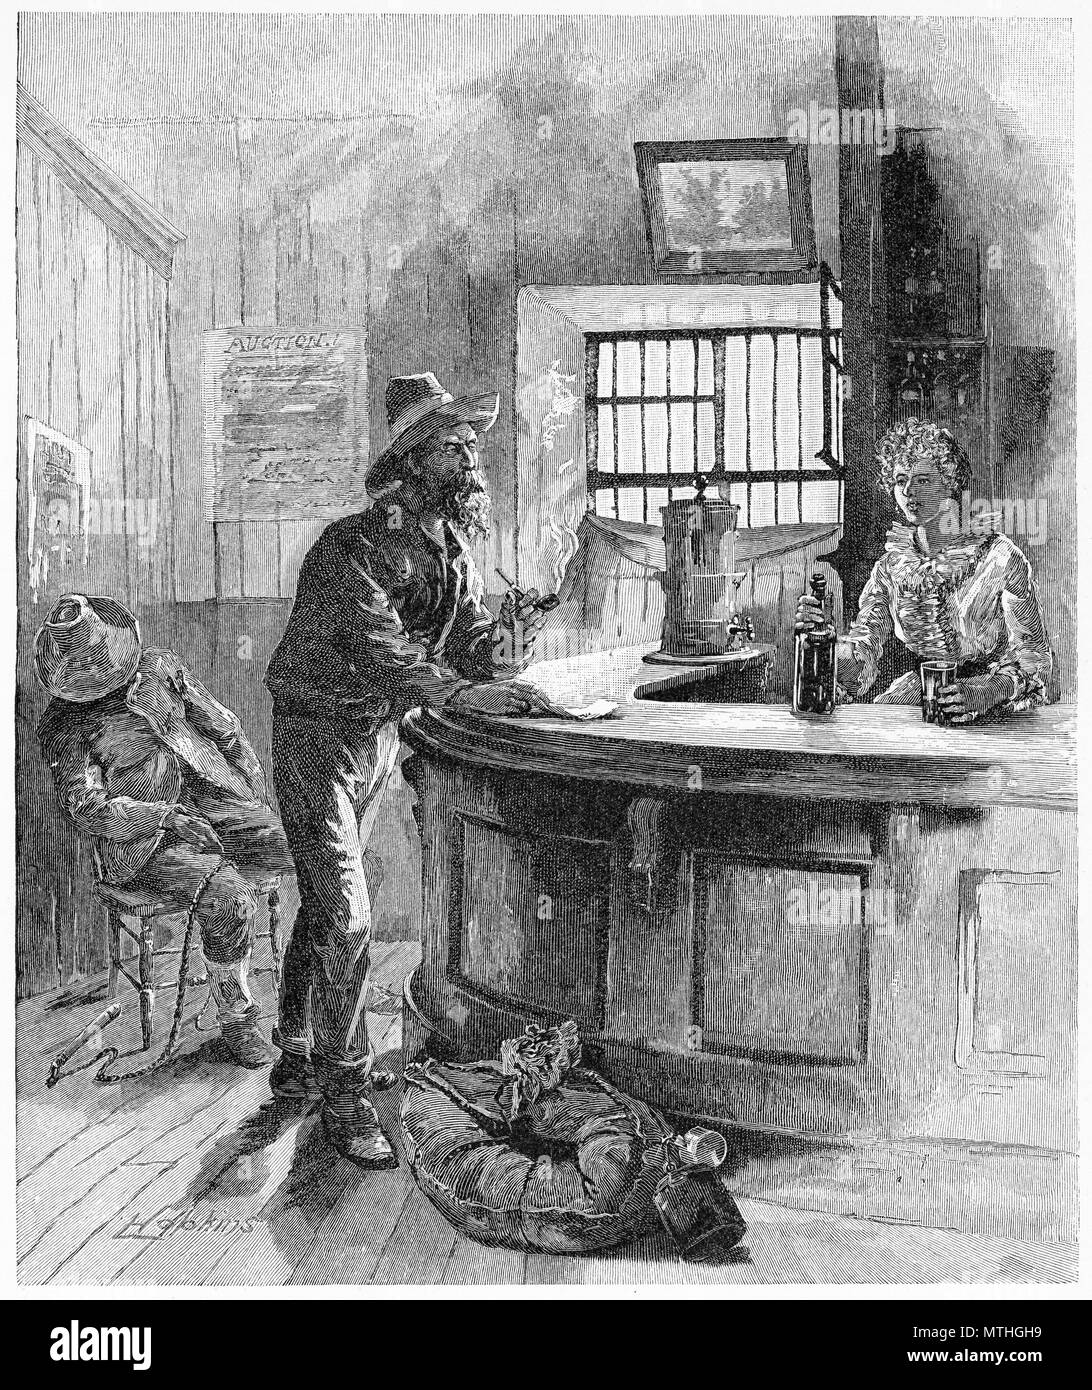 Incisione di una swagman abbattendo il suo verificare presso il pub locale, Australia. Dal pittoresco Atlas dell Australasia Vol 3, 1886 Foto Stock